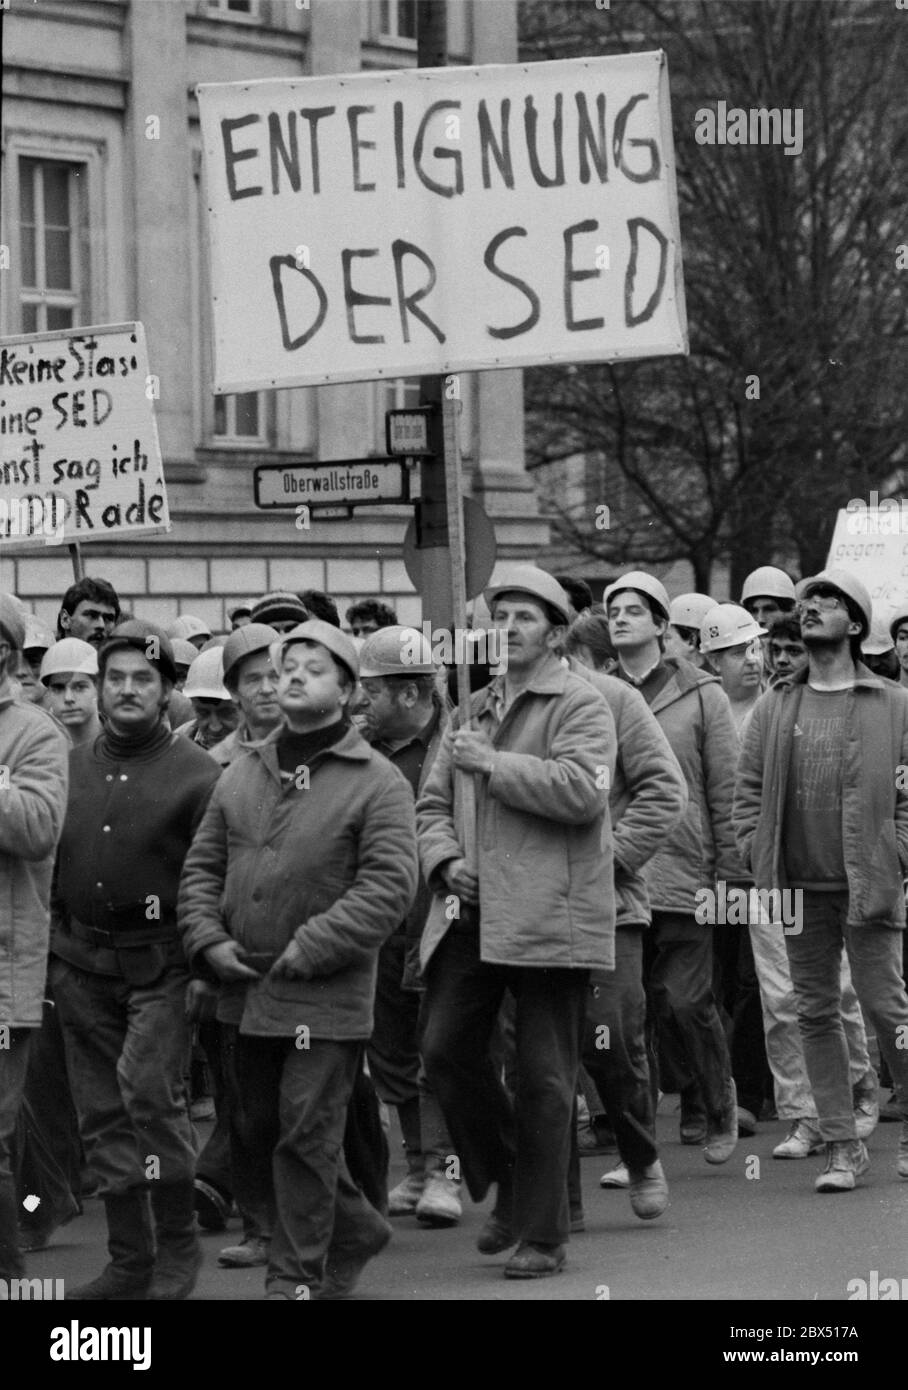 Berlino / GDR / Gennaio 1990 Demo a sostegno della Tavola rotonda, il governo Modrow non ha seguito gli ordini della Tavola rotonda. Di conseguenza, i lavoratori edili dei cantieri di Friedrichstrasse hanno smesso di lavorare e si sono trasferiti al Volkskammer. La maggior parte di loro lavorava per il VEB Ingenieurhochbau, Dove ci sono forti gruppi di opposizione - espropriazione della SED - // opposizione / Tavola rotonda / Wende / unificazione / GDR-Politica *** Città Germania Est / Germania Comunista / Oppositionautorità statali Beside una Tavola rotonda è stata installata nel 1990. Tutti i gruppi di opposizione, Stato Foto Stock